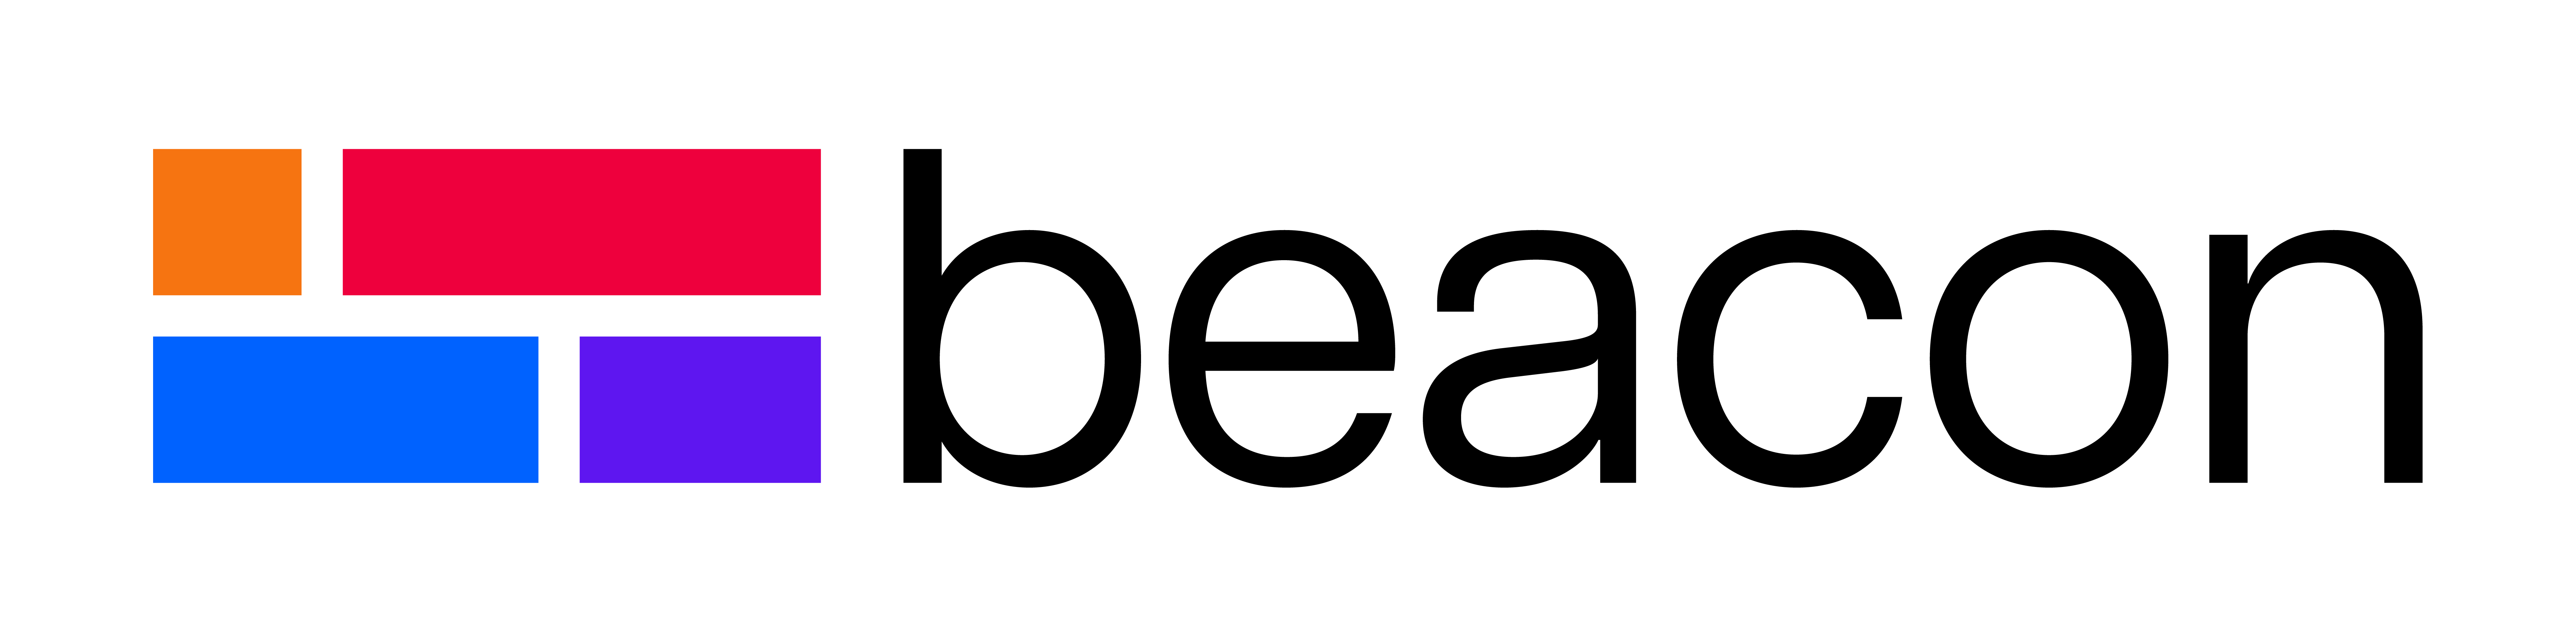 Logo: Beacon